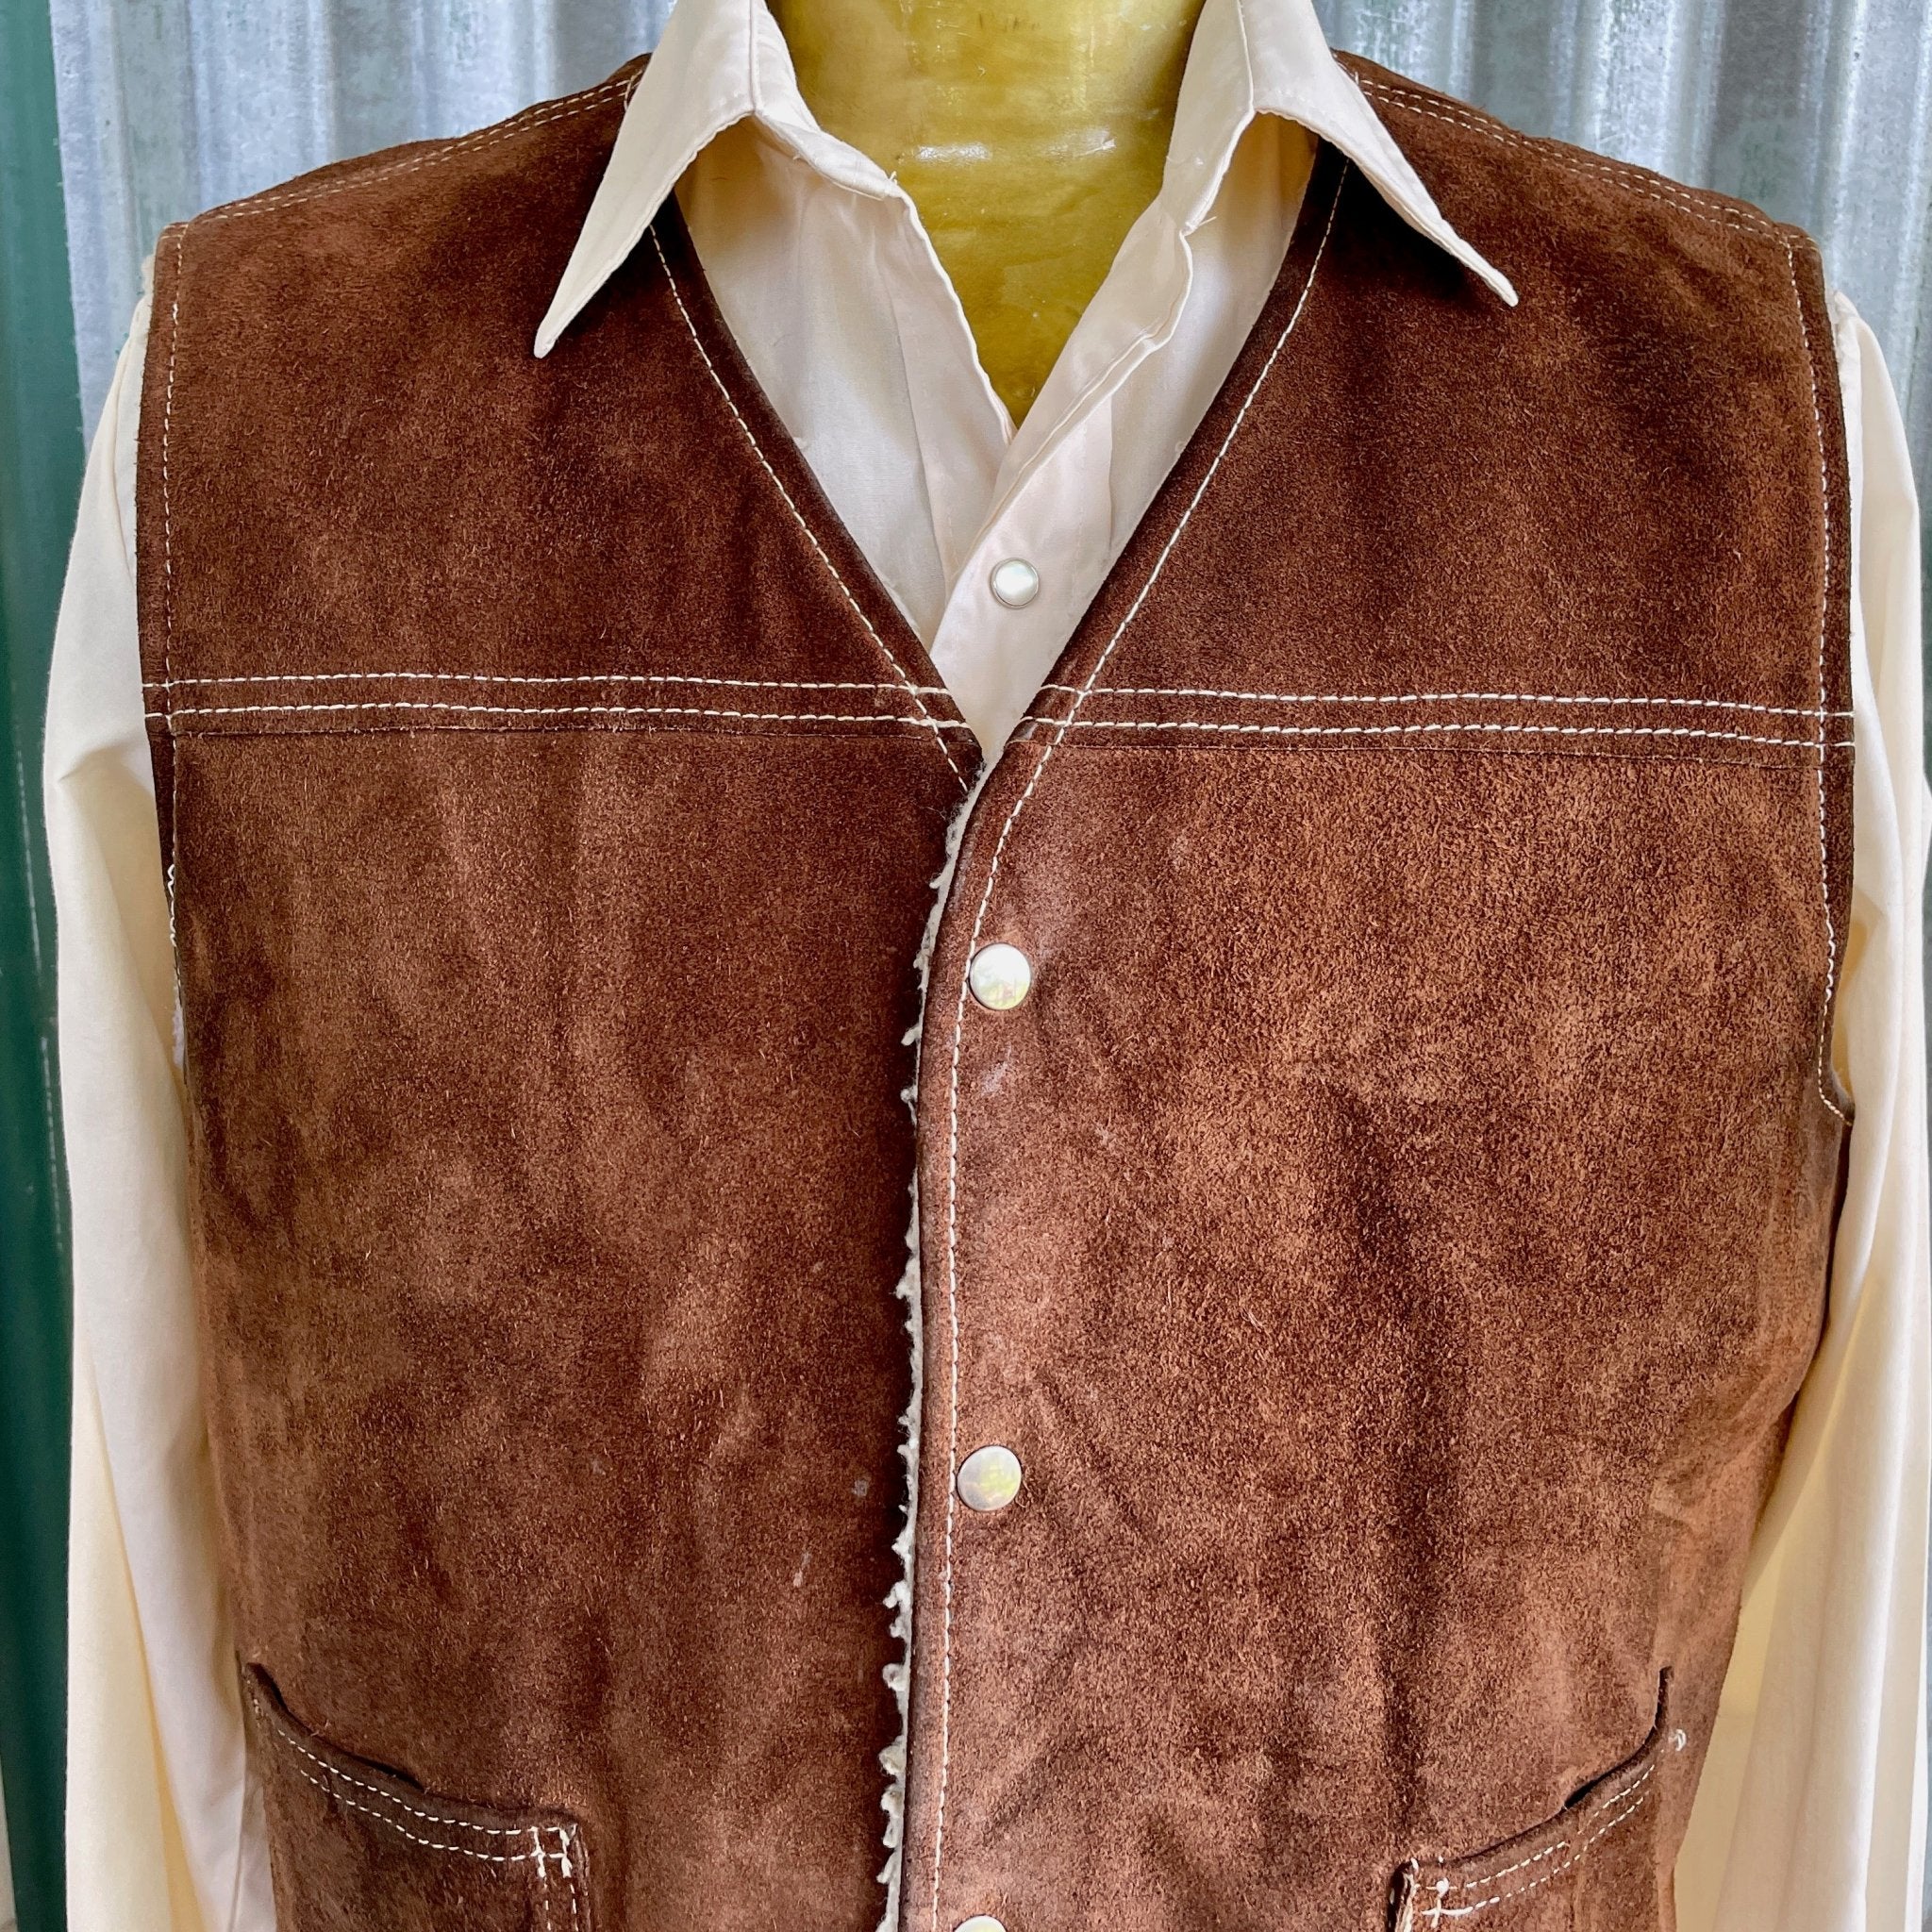 Men's Faux Suede Vest - $25.99, Pioneer & LDS Trek Clothes